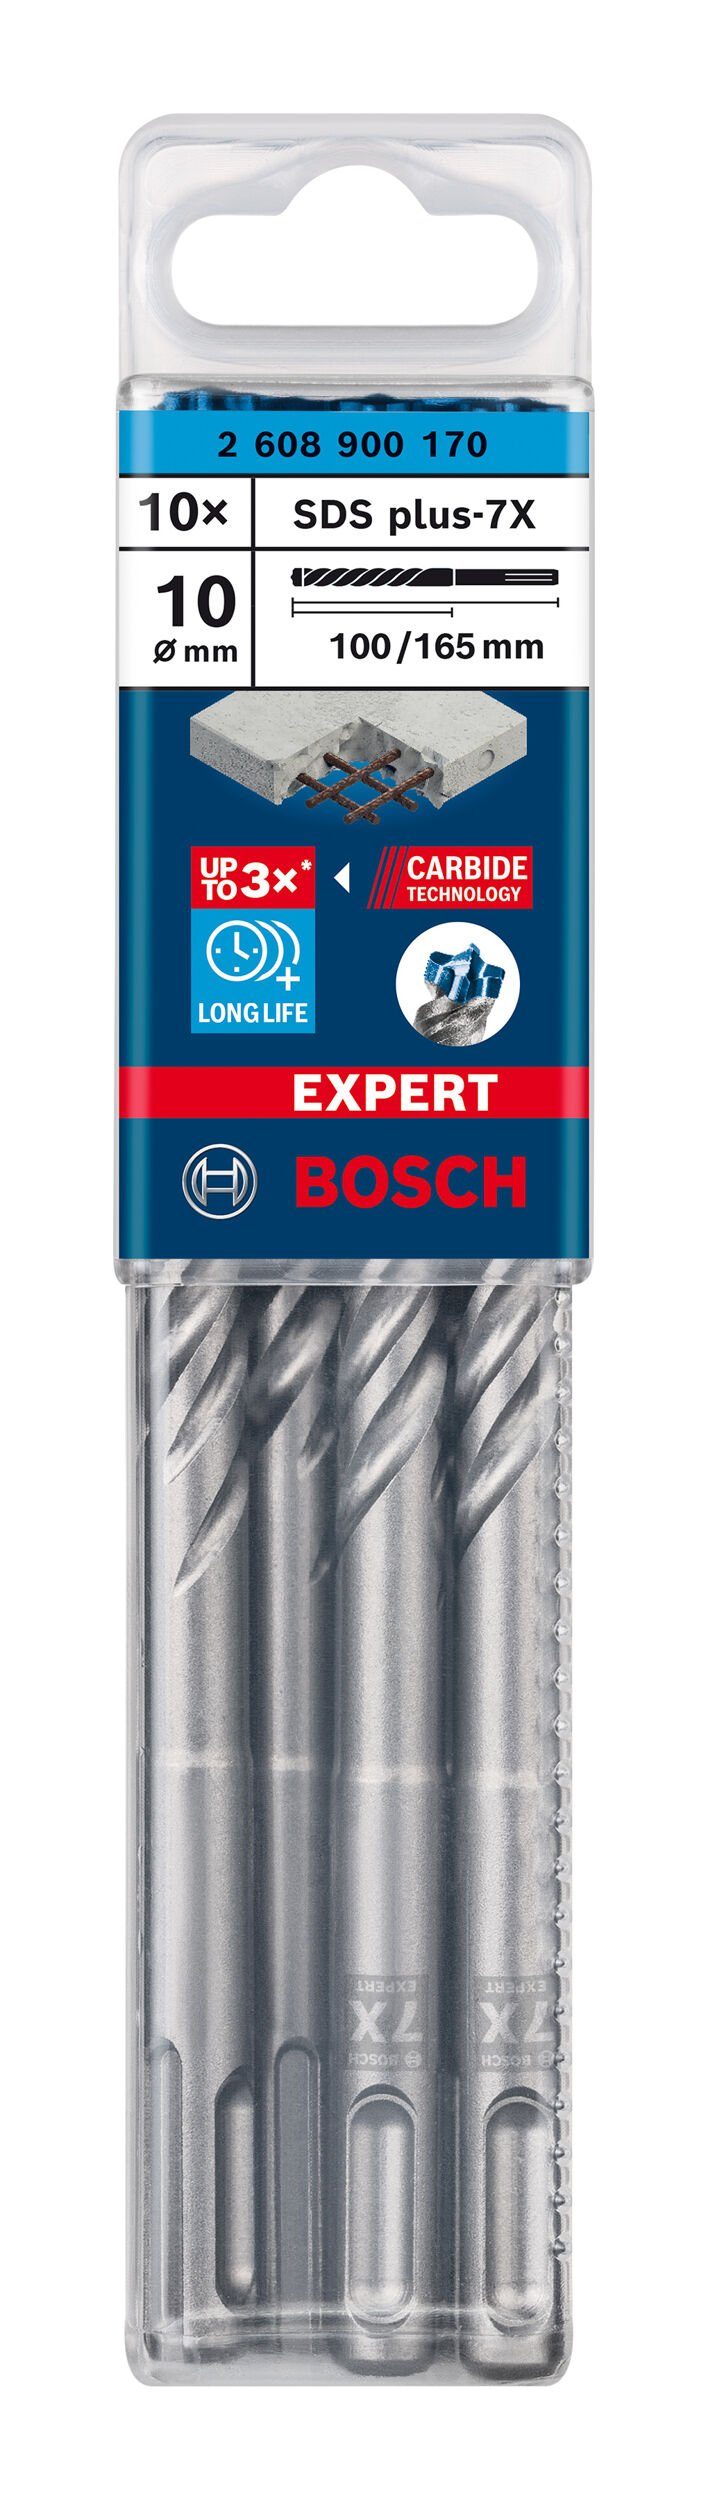 10 x 10er-Pack Expert - plus-7X, - (10 Stück), x 165 SDS BOSCH Universalbohrer mm Hammerbohrer 100